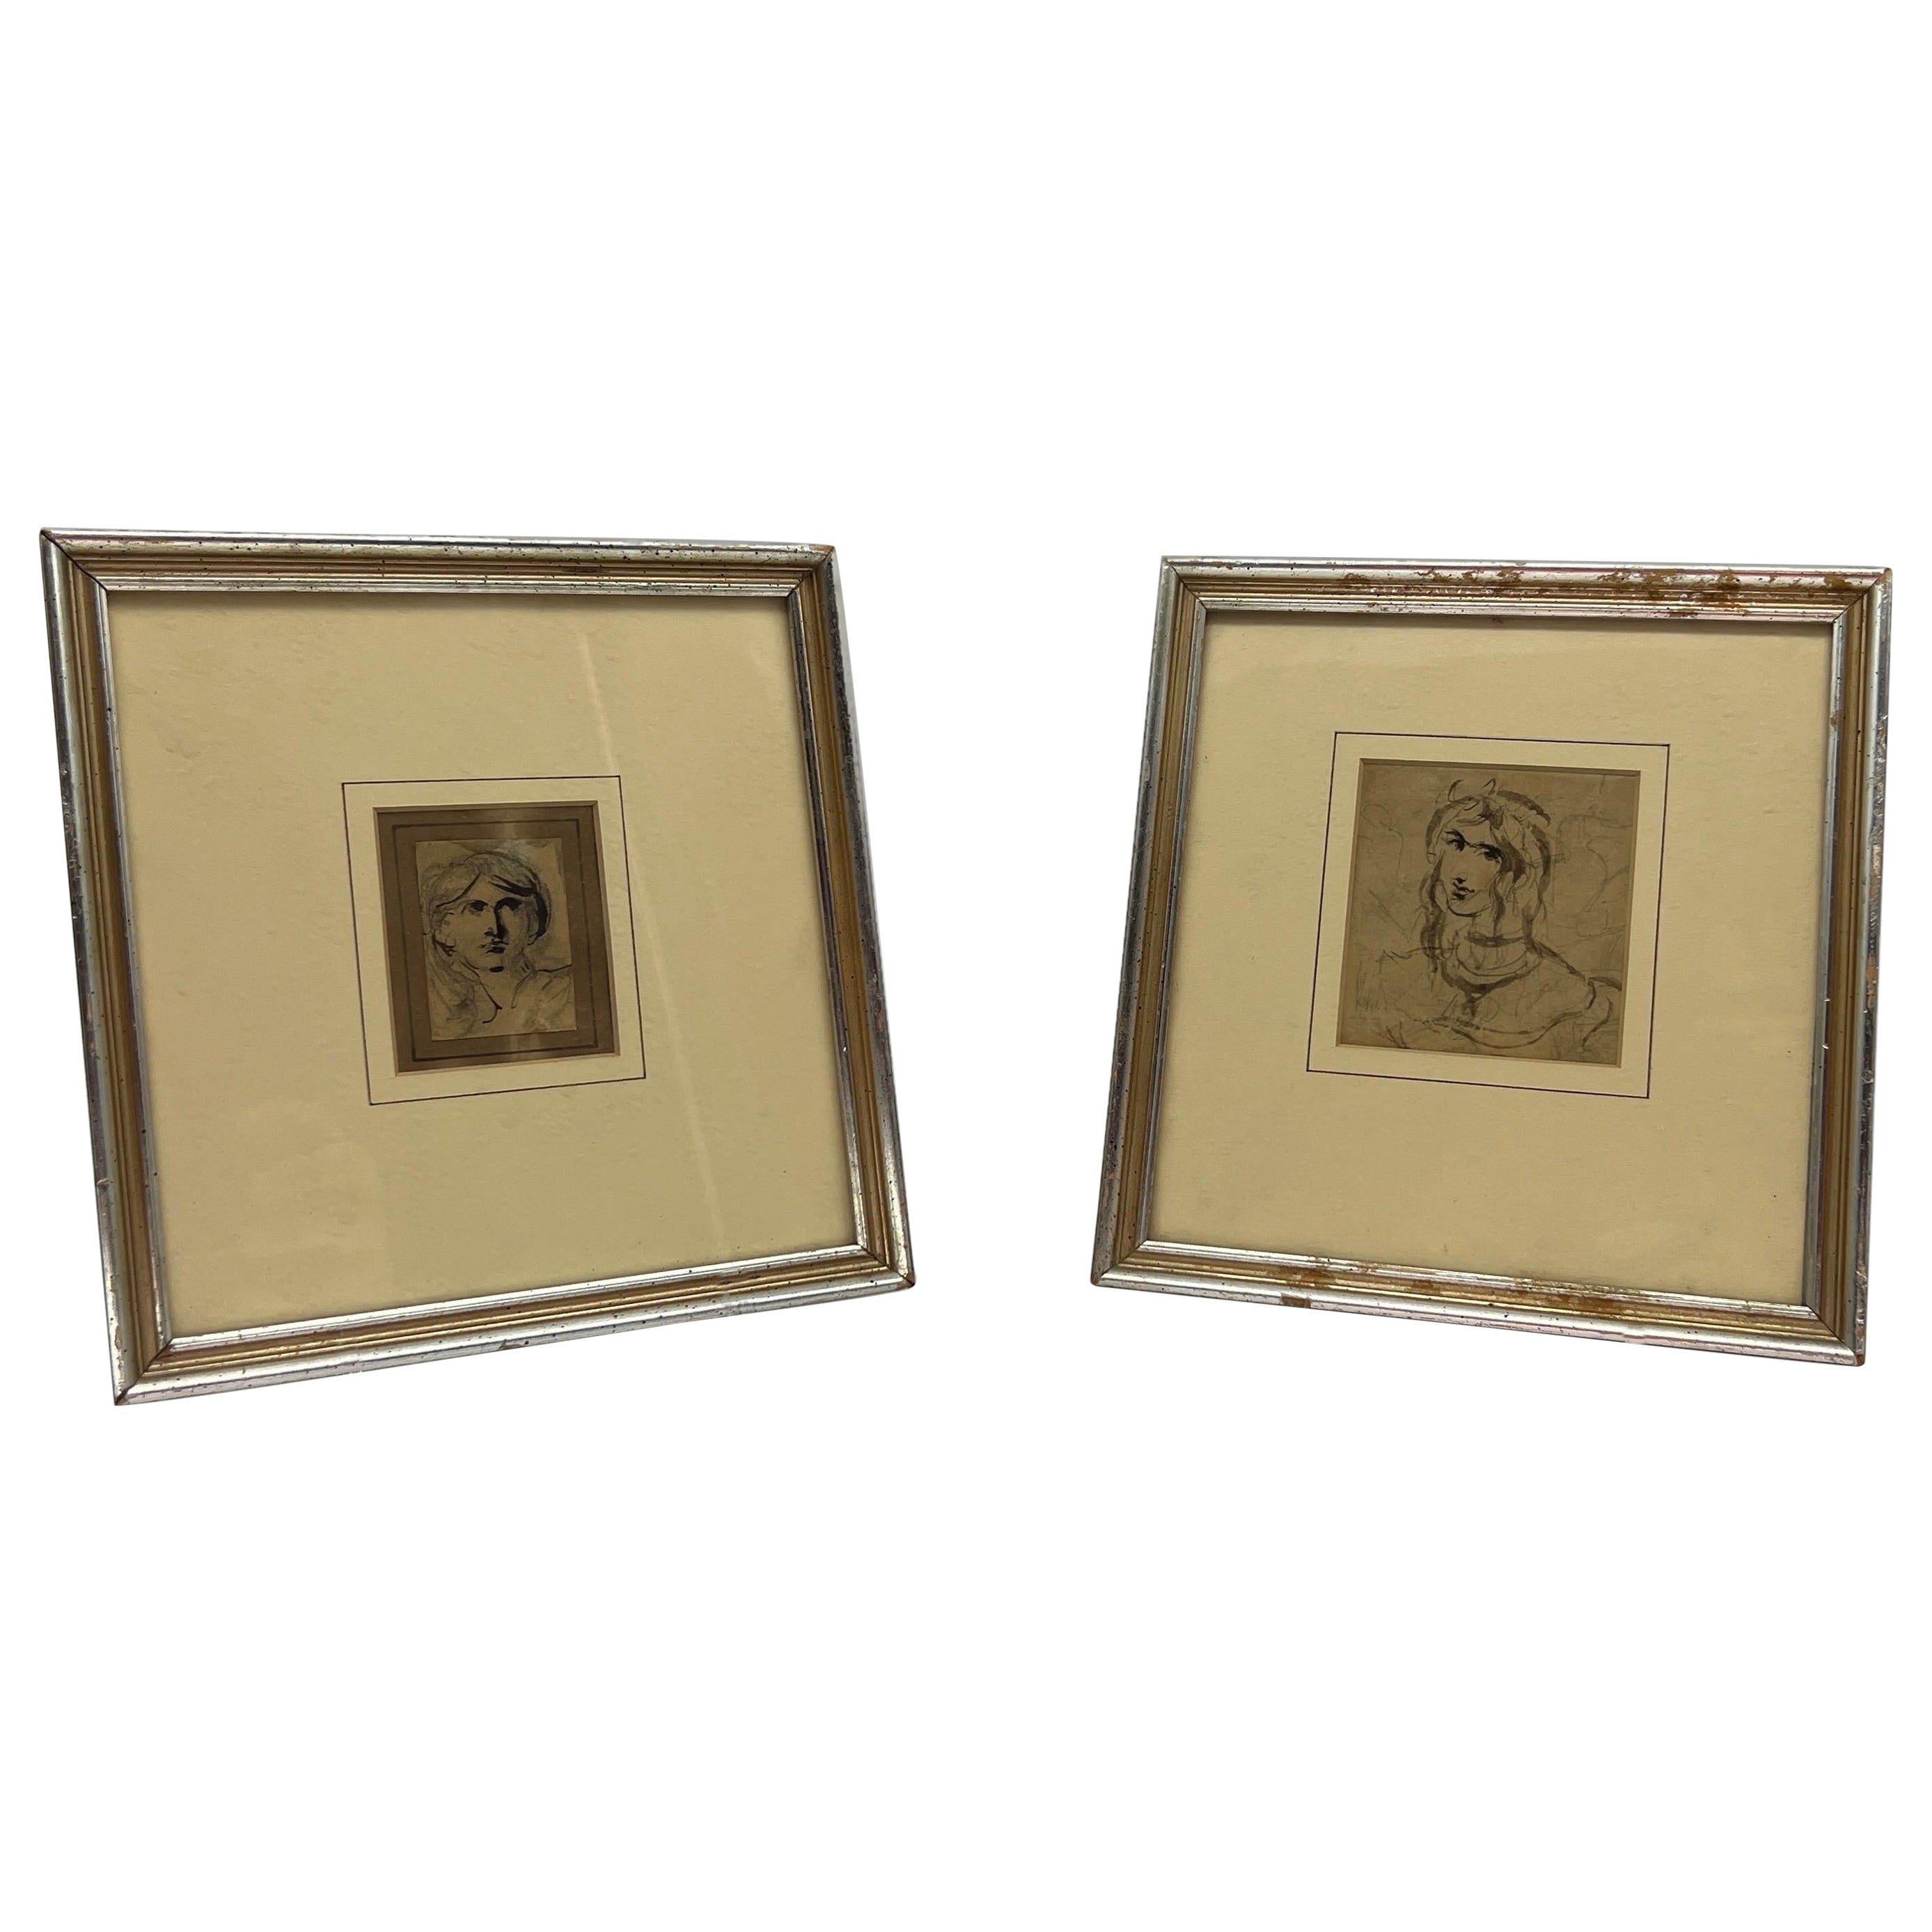 Paar, Grand Tour Stil 19. Jahrhundert Feder & Tinte "Männlich & Weiblich" Abstrakte